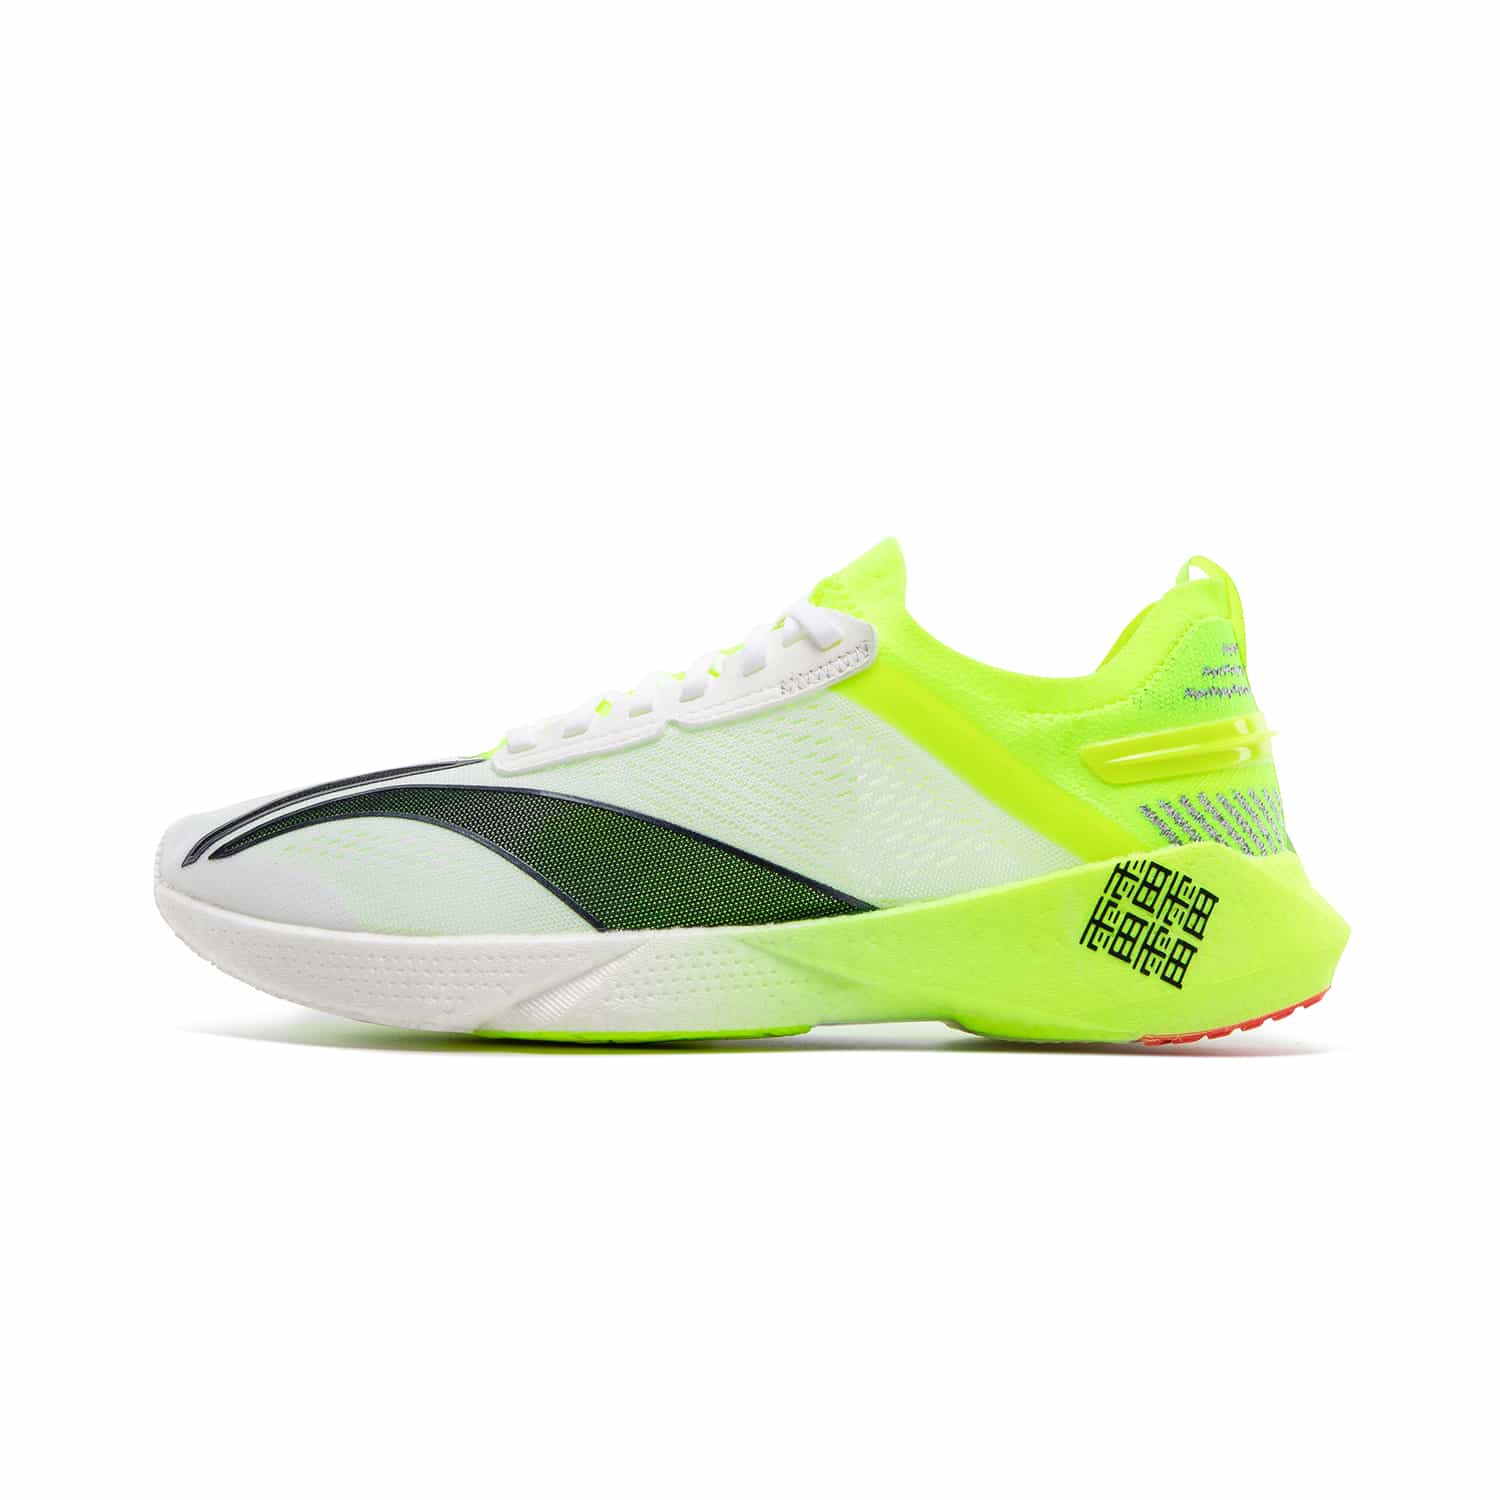 天馬男子專業競速跑鞋 - 標準白/螢光亮綠